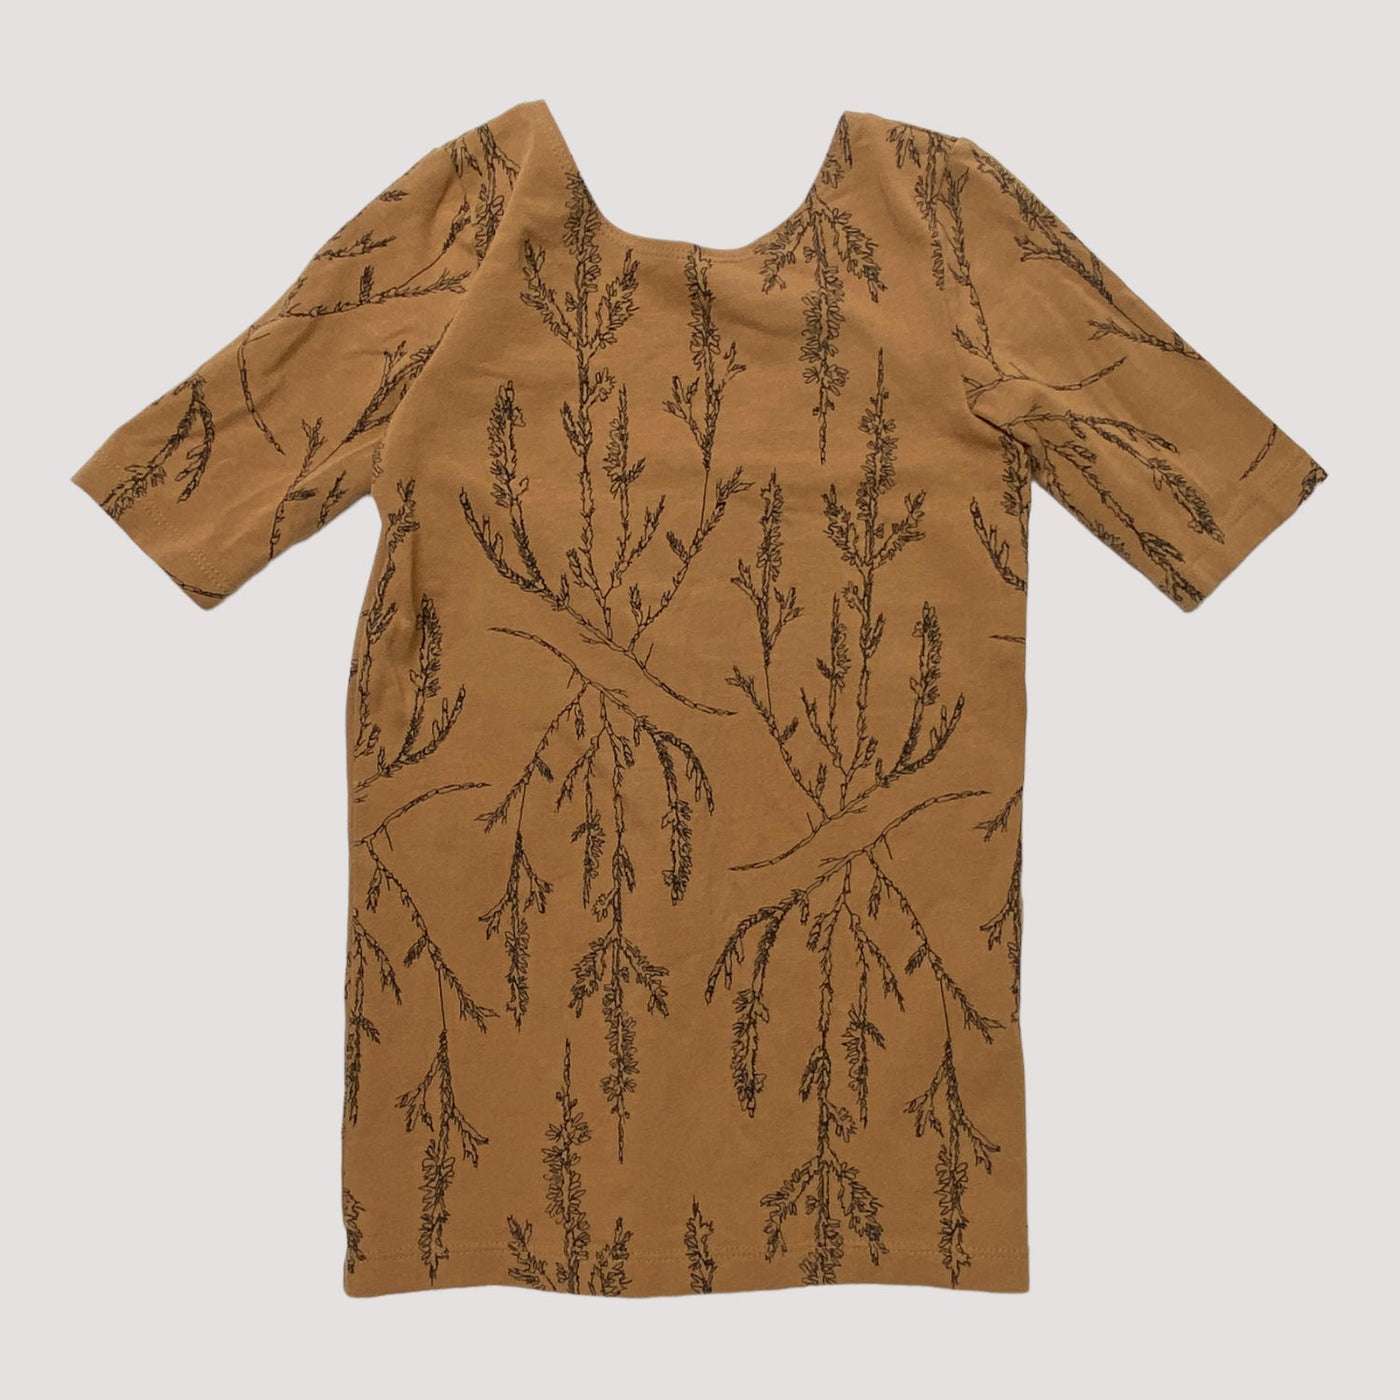 Mainio t-shirt, brown | 110/116cm